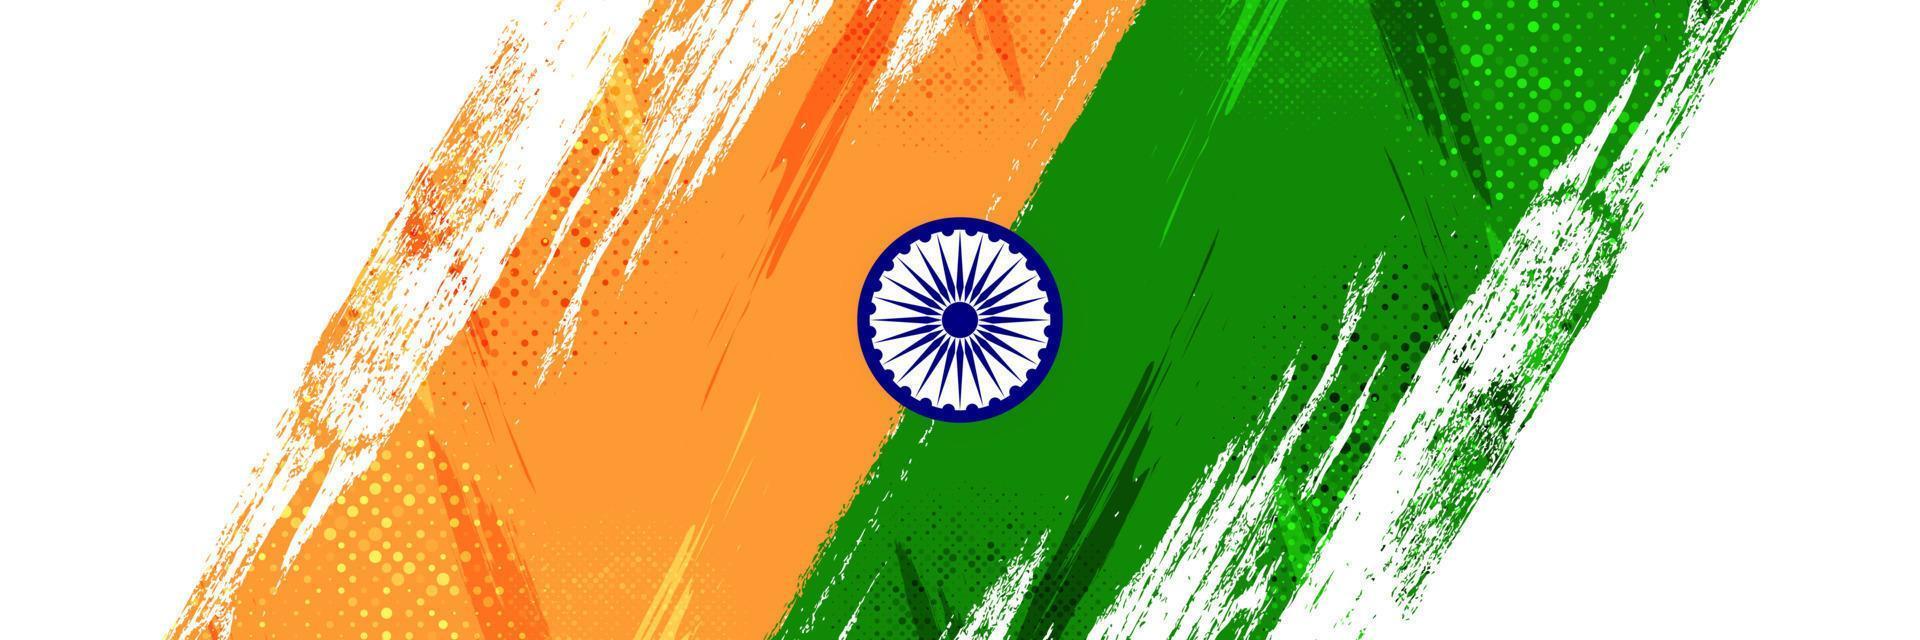 fondo de la bandera india con estilo de pincel y efecto de trama de semitonos. ilustración de bandera nacional tricolor india con concepto grunge vector